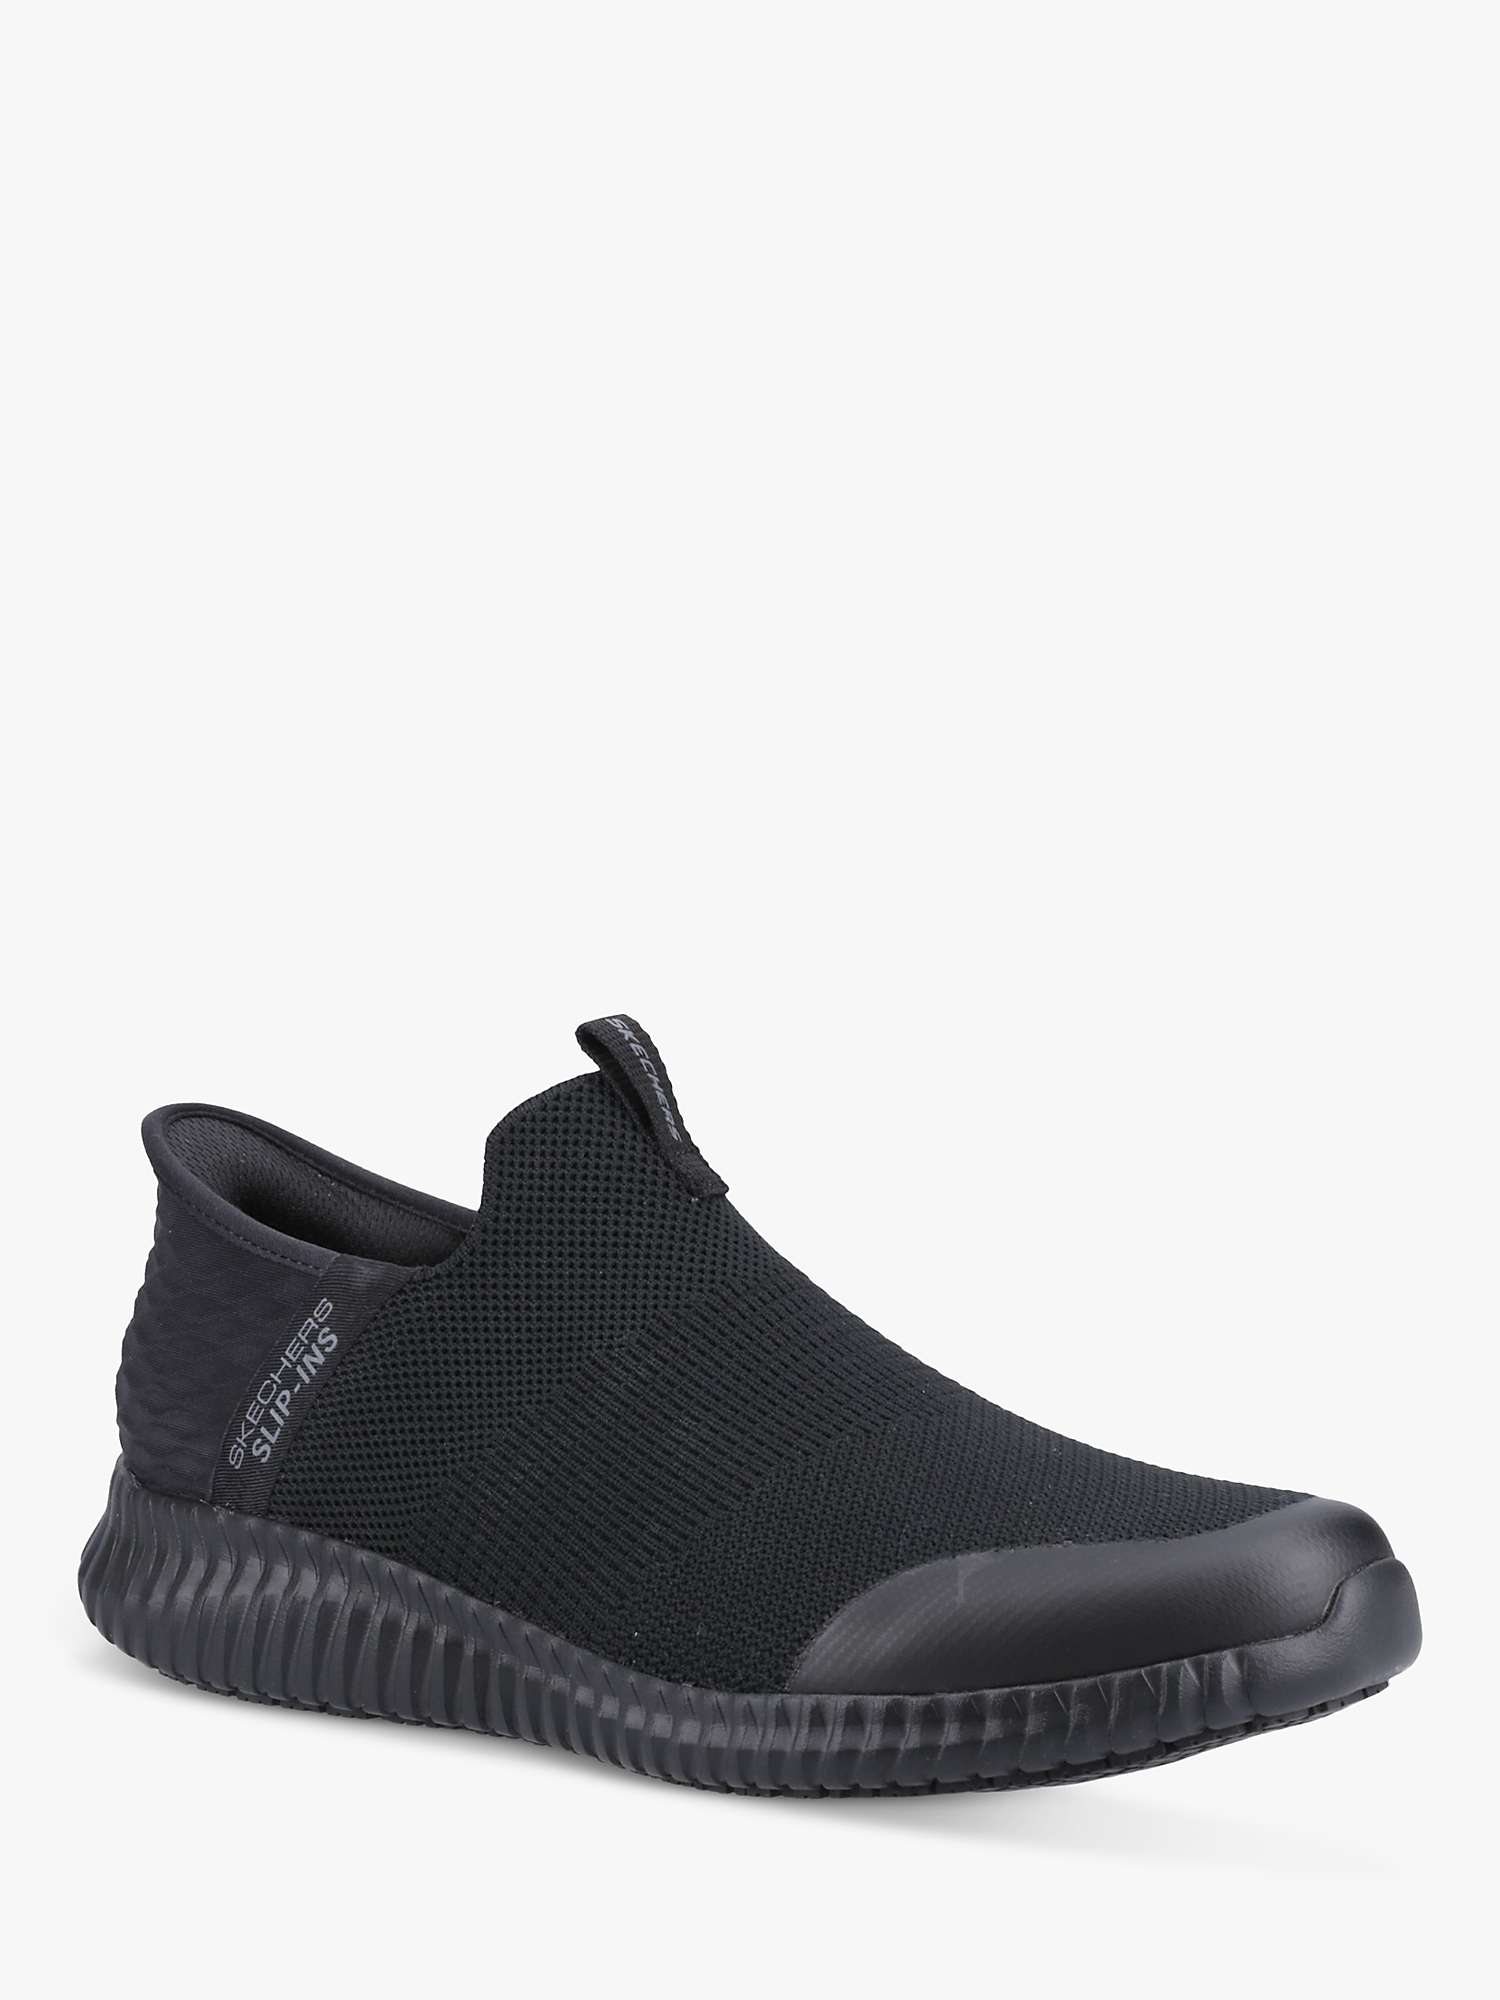 Buy Skechers Cessnock Rylind Slip Resistant Work Shoes, Black Online at johnlewis.com